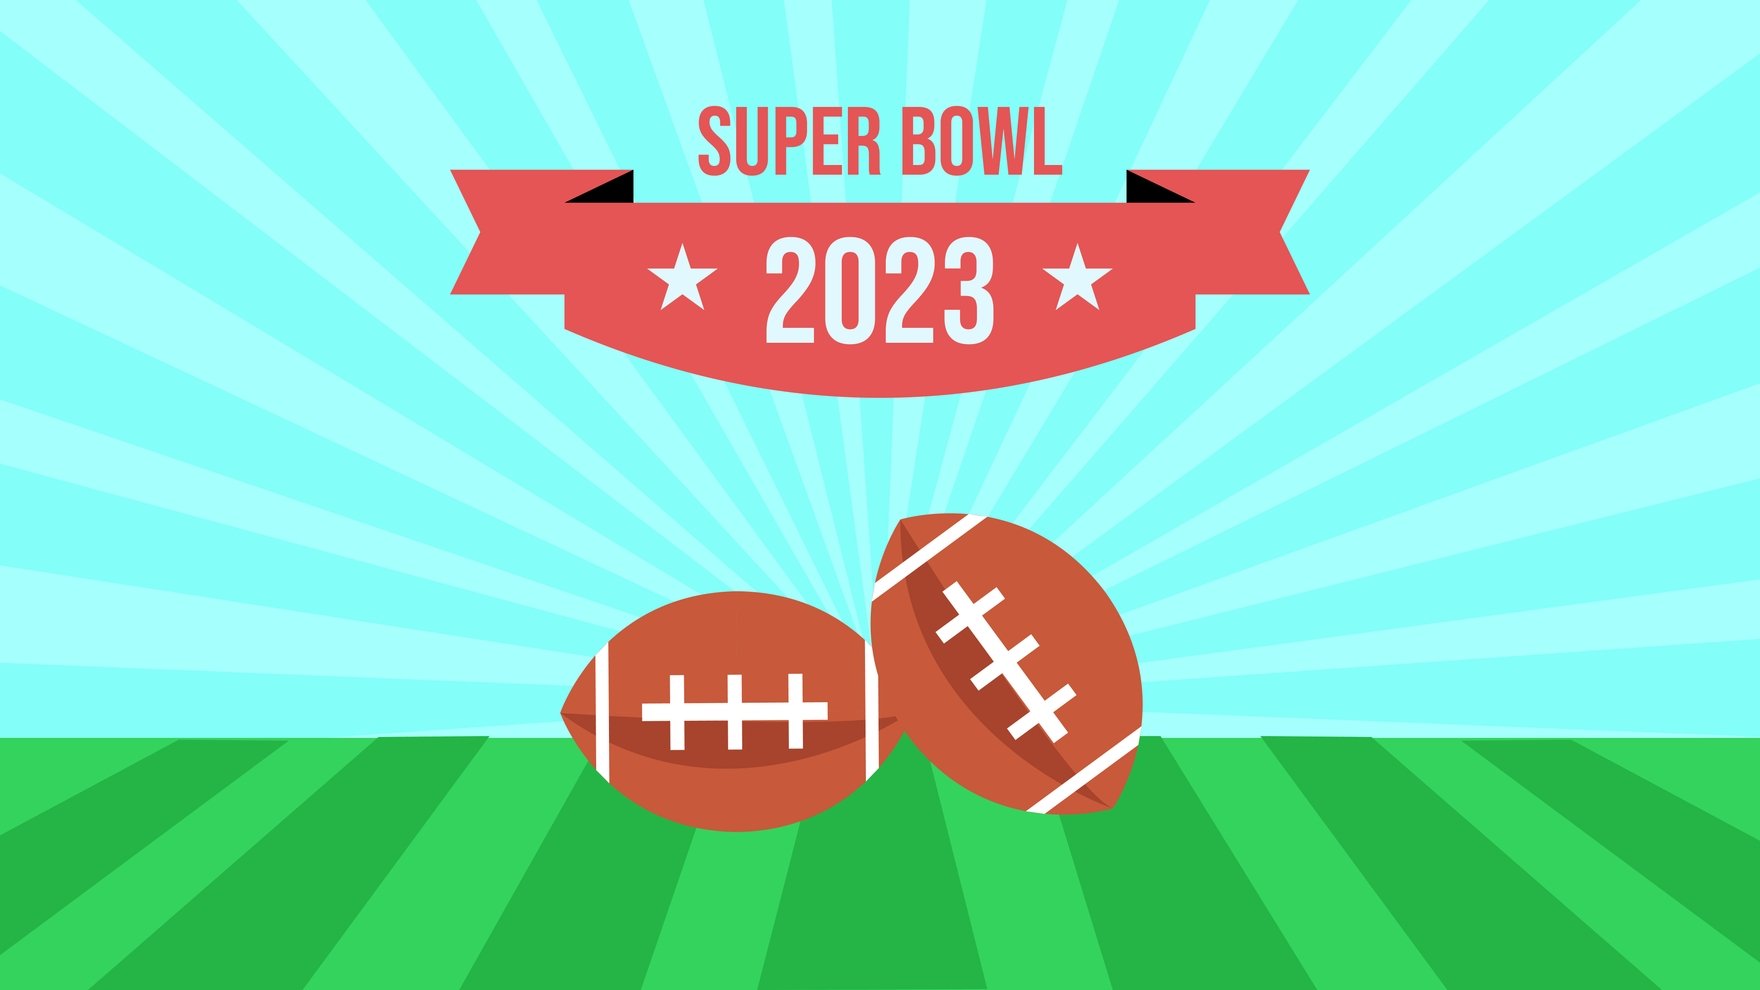 Super Bowl 2023 SVG PNG